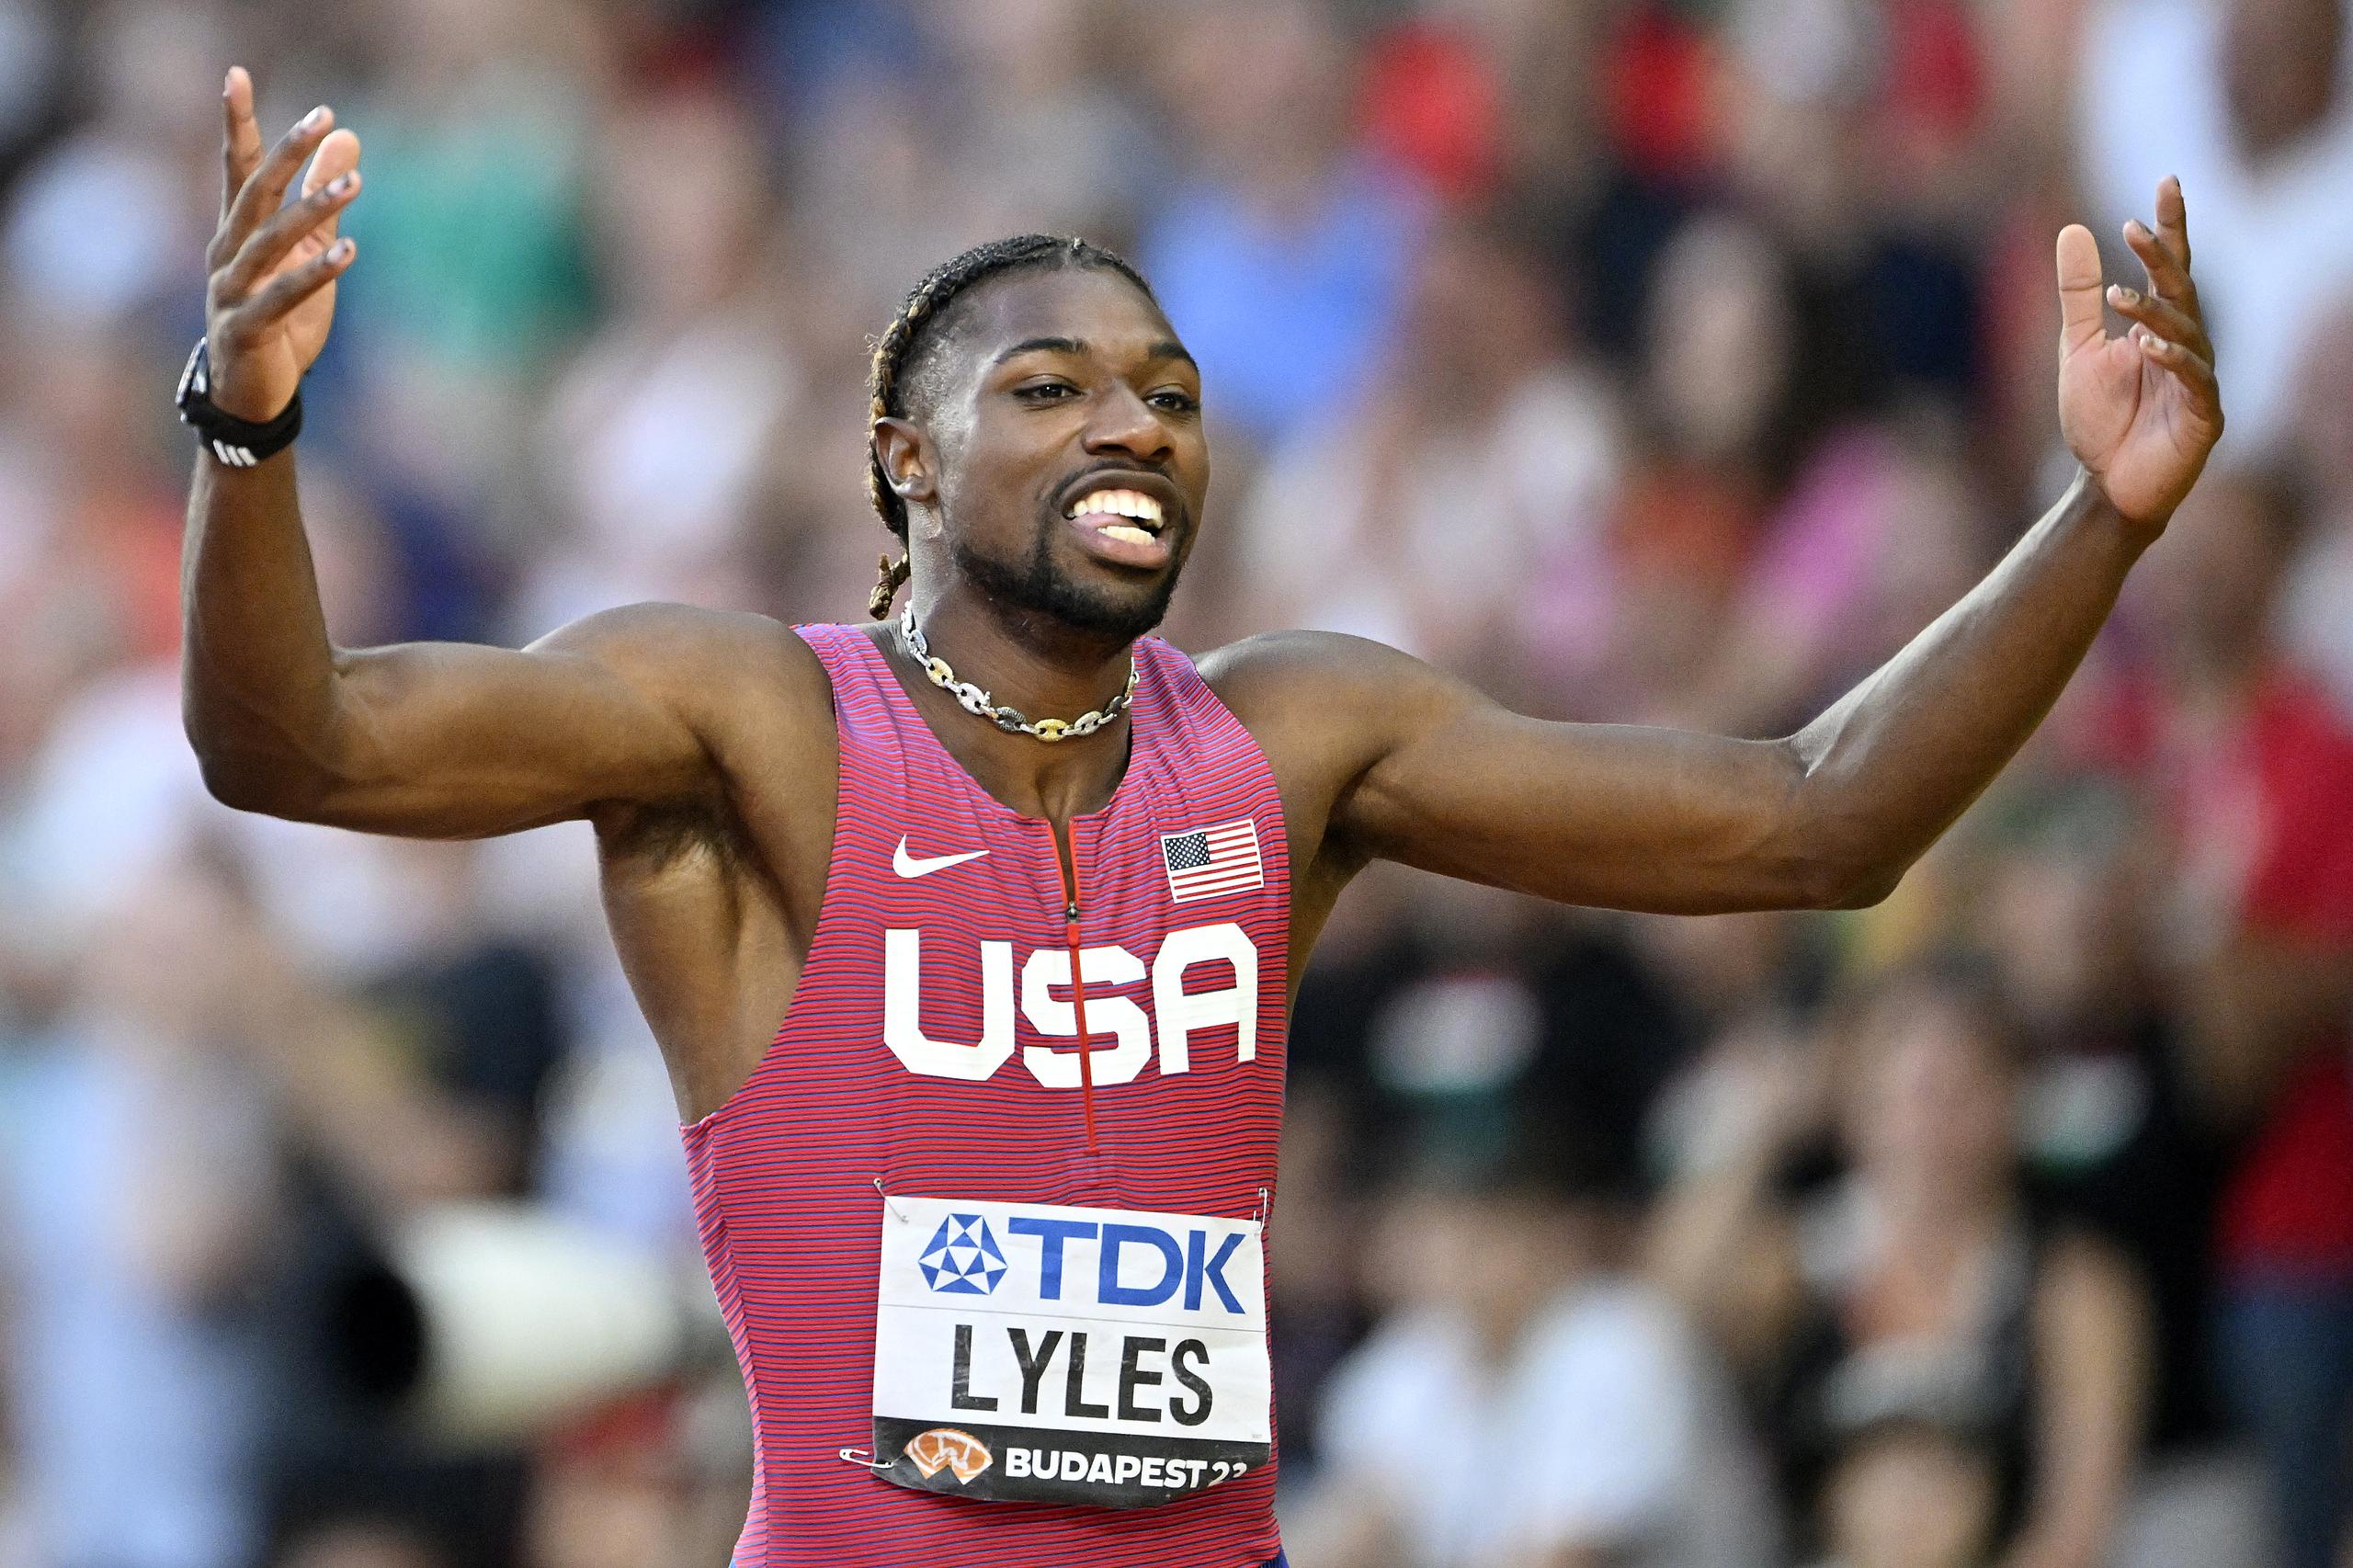 Noah Lyles, de los Estados Unidos, celebra su victoria en la final de los 100 metros del Campeonato Mundial Budapest 2023.